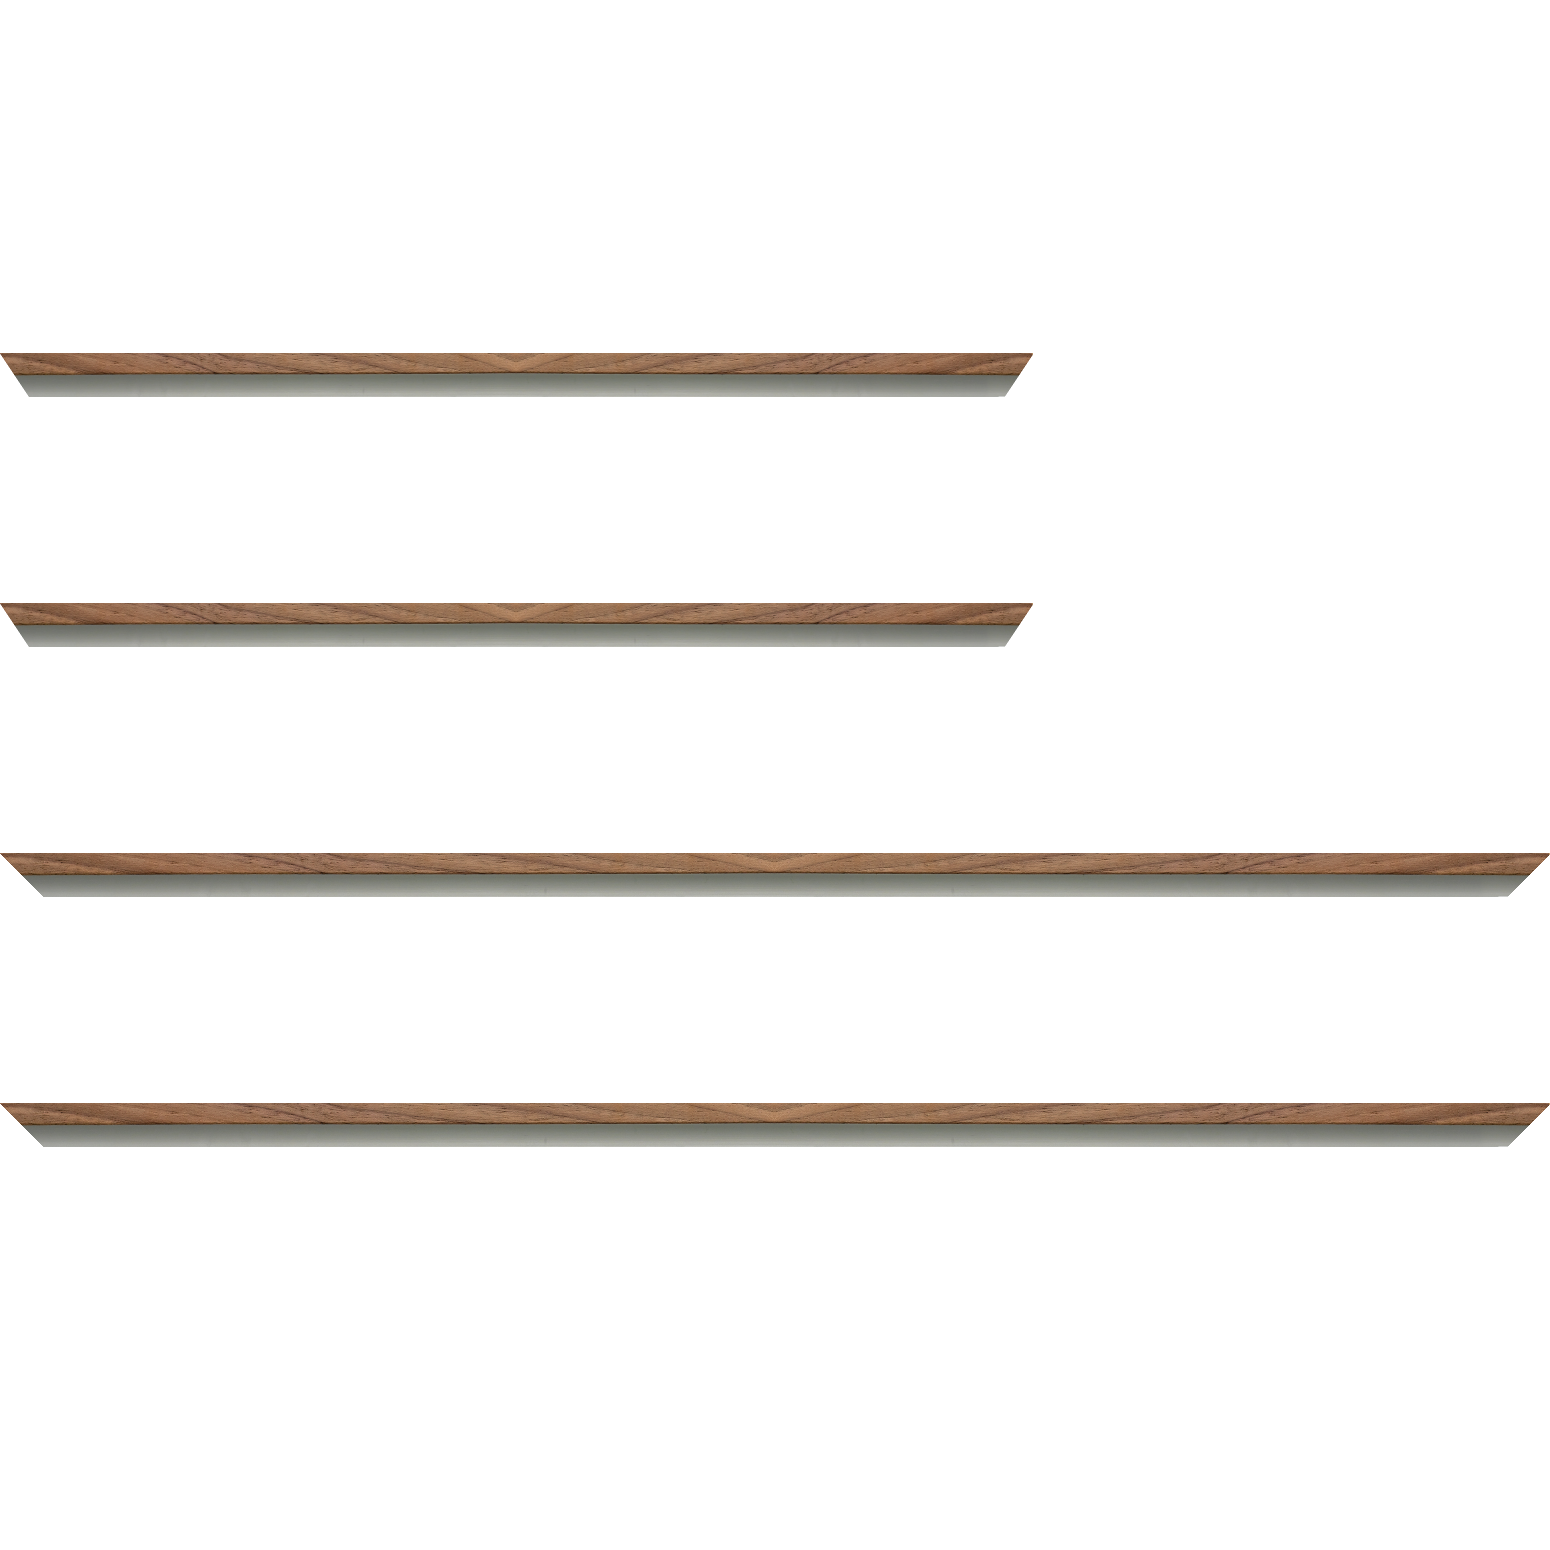 Baguette aluminium profil plat largeur 8mm, placage véritable noyer ,(le sujet qui sera glissé dans le cadre sera en retrait de 6mm de la face du cadre assurant un effet très contemporain) mise en place du sujet rapide et simple: assemblage du cadre par double équerre à vis (livré avec le système d'accrochage qui se glisse dans le profilé) encadrement non assemblé,  livré avec son sachet d'accessoires - 92x60